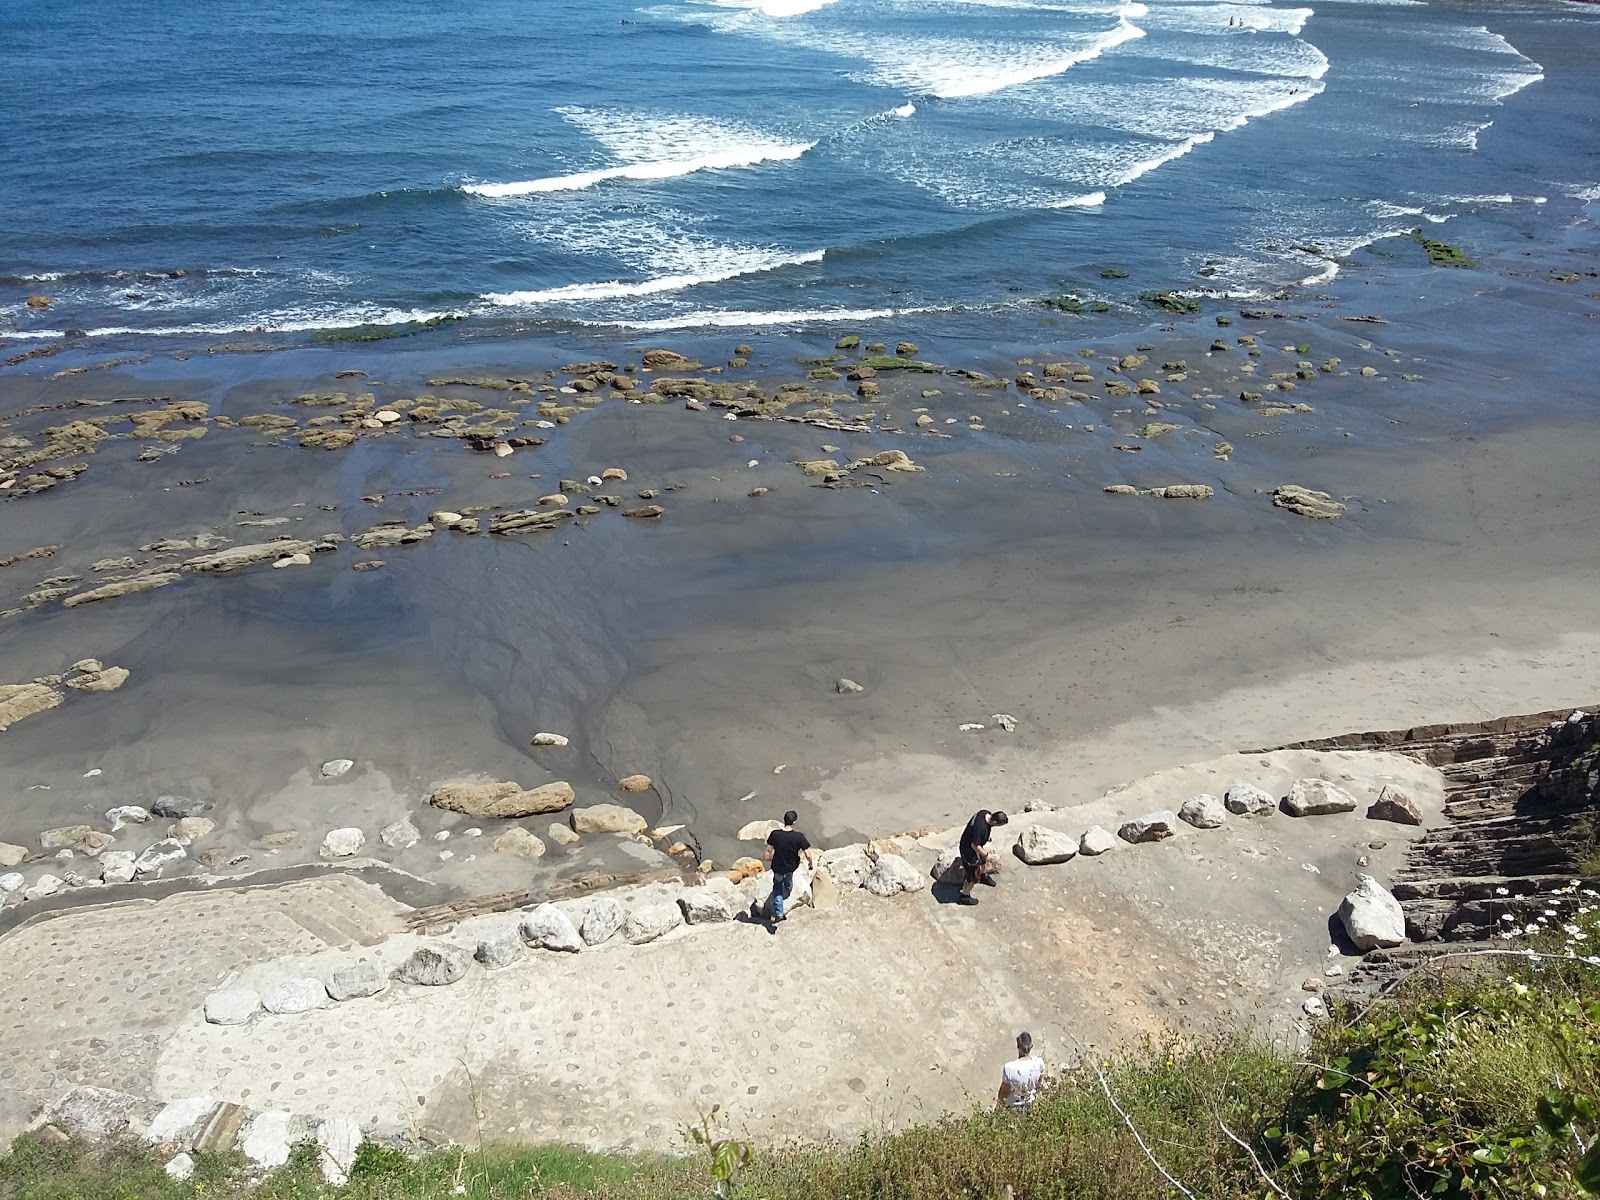 Zdjęcie Playa de Arnao - popularne miejsce wśród znawców relaksu